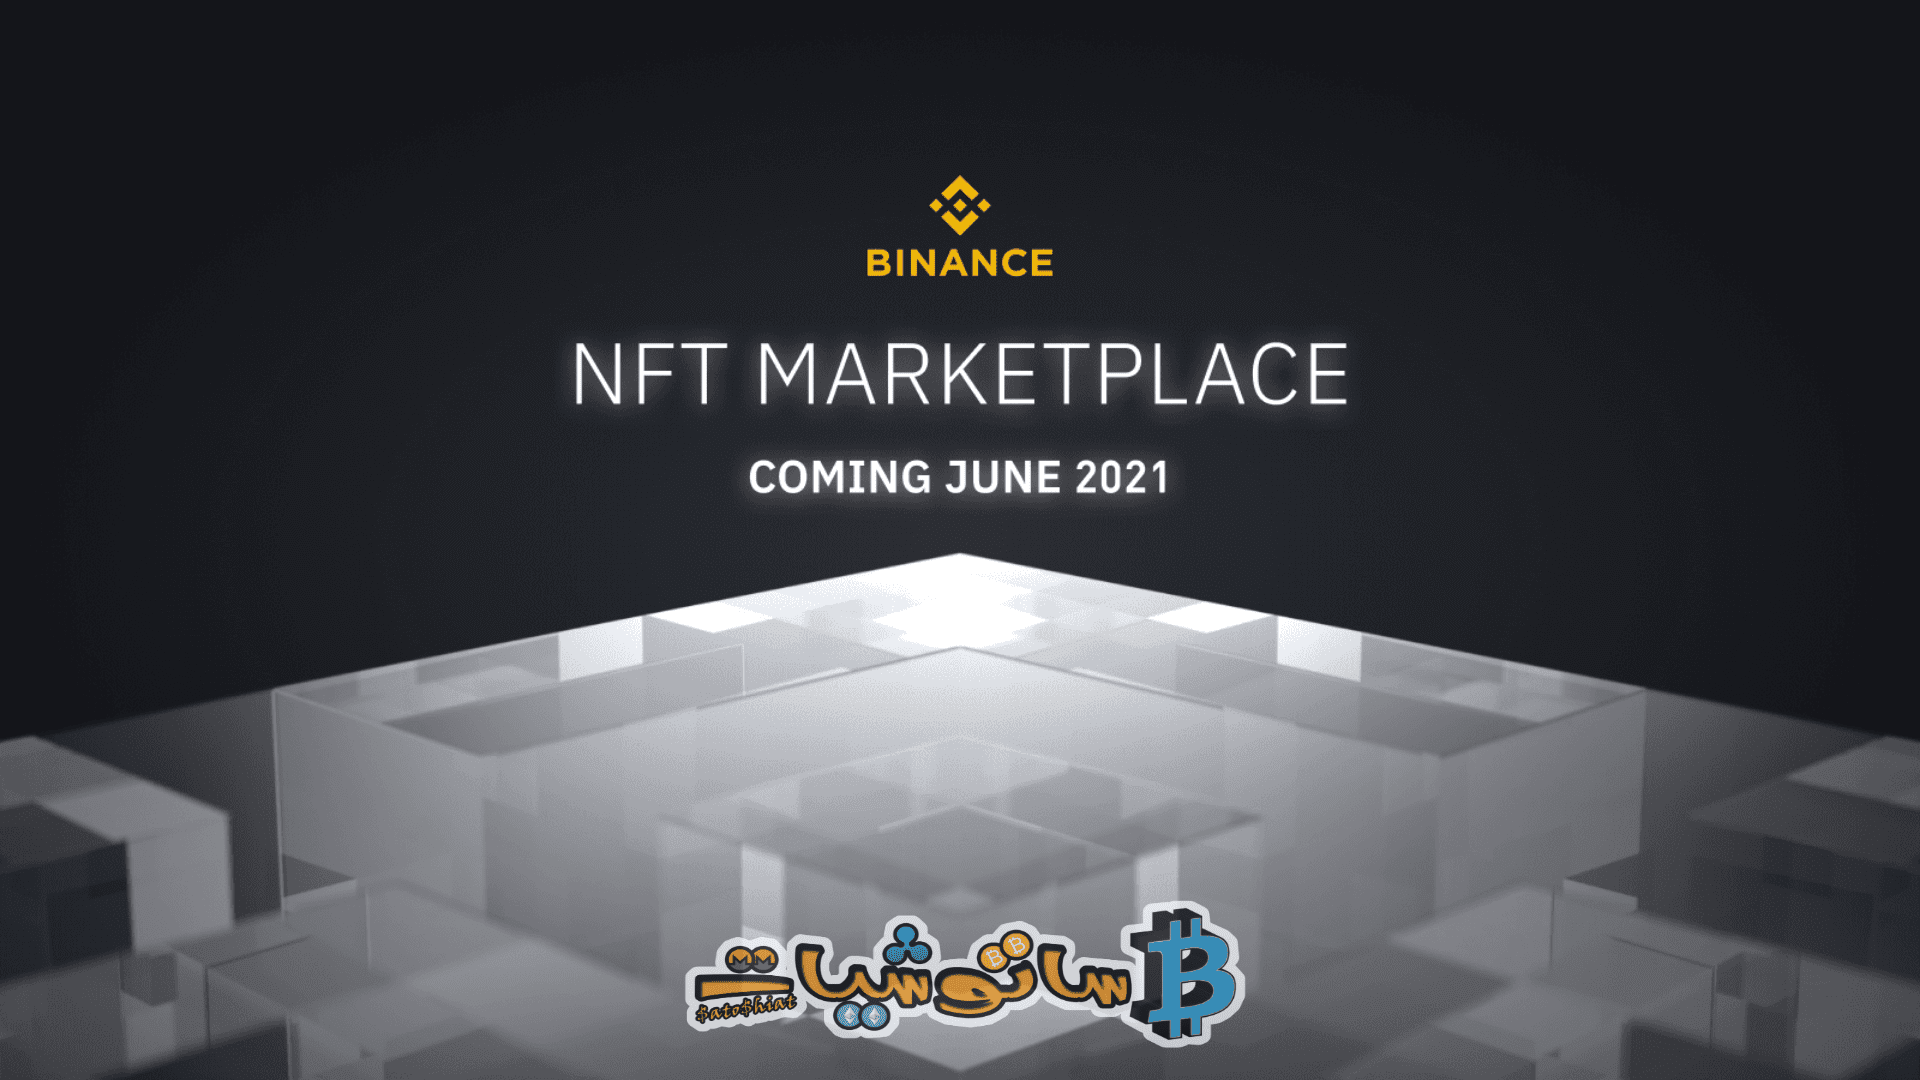 تستعد أكبر منصة تداول العملات الرقمية Binance لإطلاق منصة NFT الخاصة بها